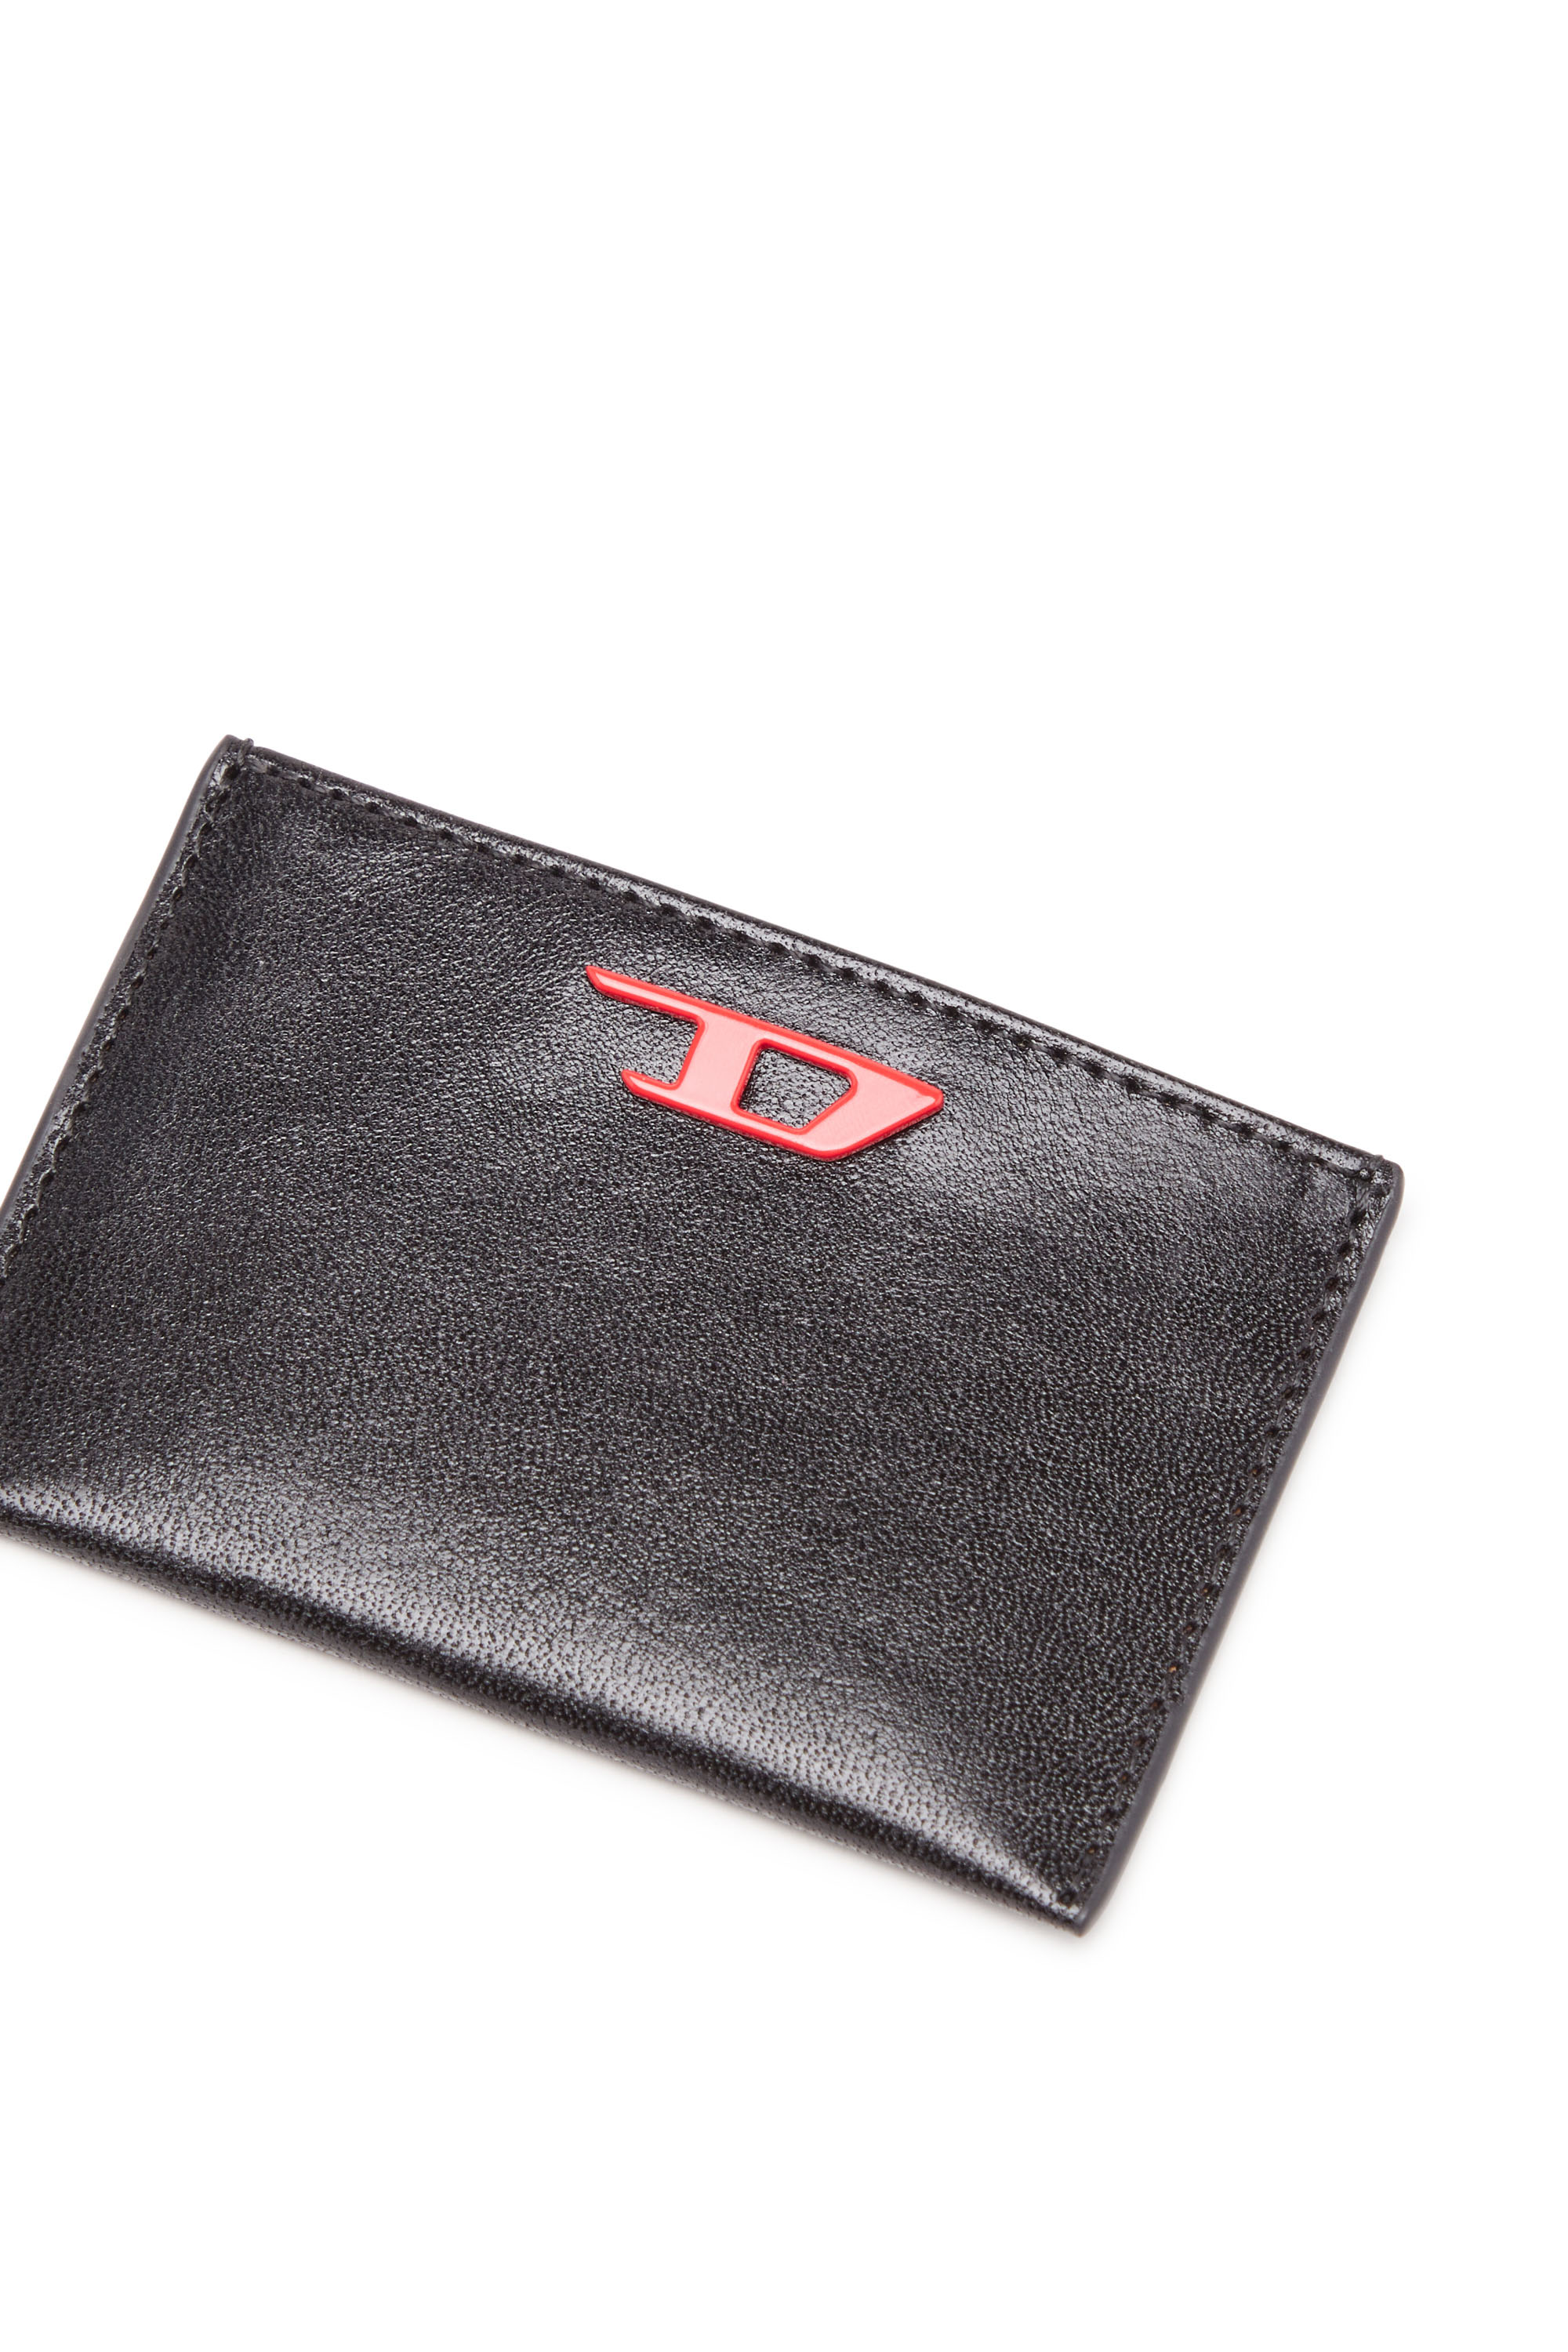 Diesel - RAVE CARD CASE, Homme Porte-cartes en cuir avec plaque D rouge in Noir - Image 4